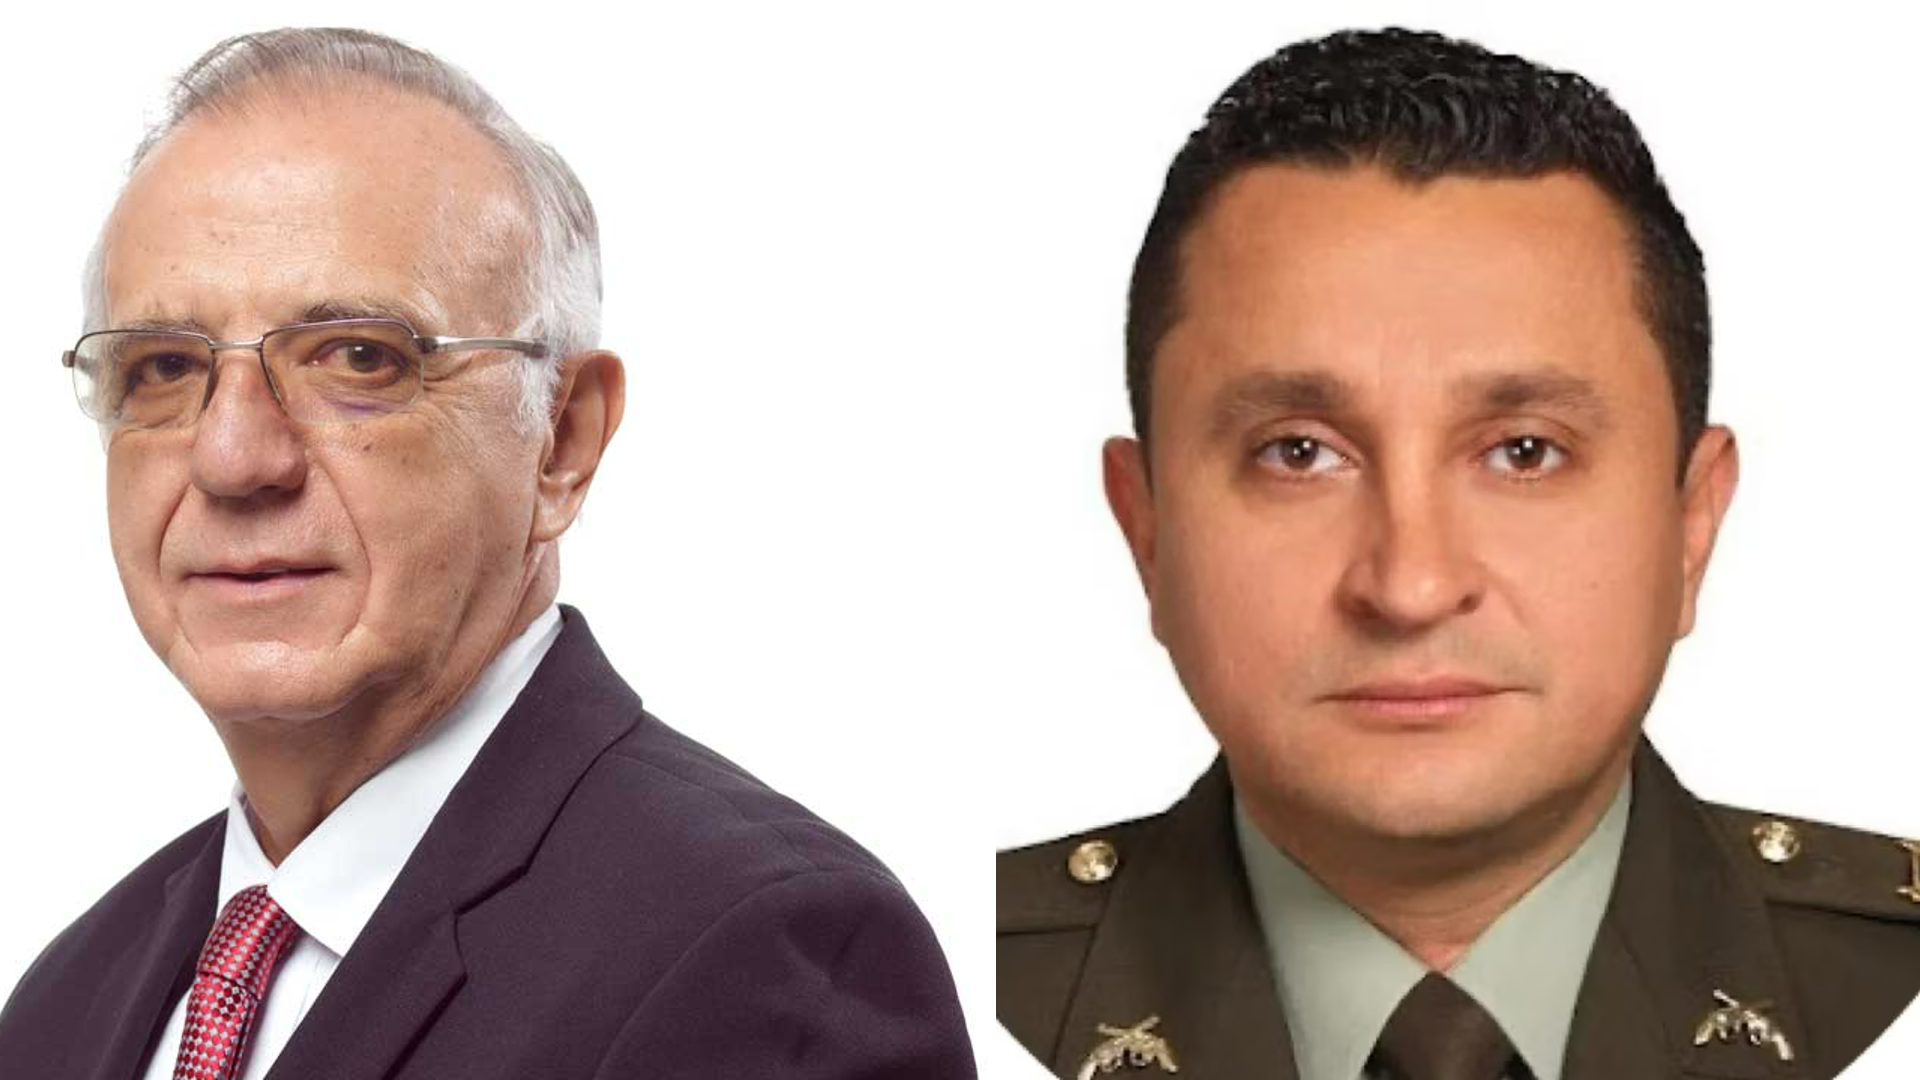 Ministerio de defensa sobre muerte del coronel Dávila: “No existen realmente dudas, fue un suicidio”